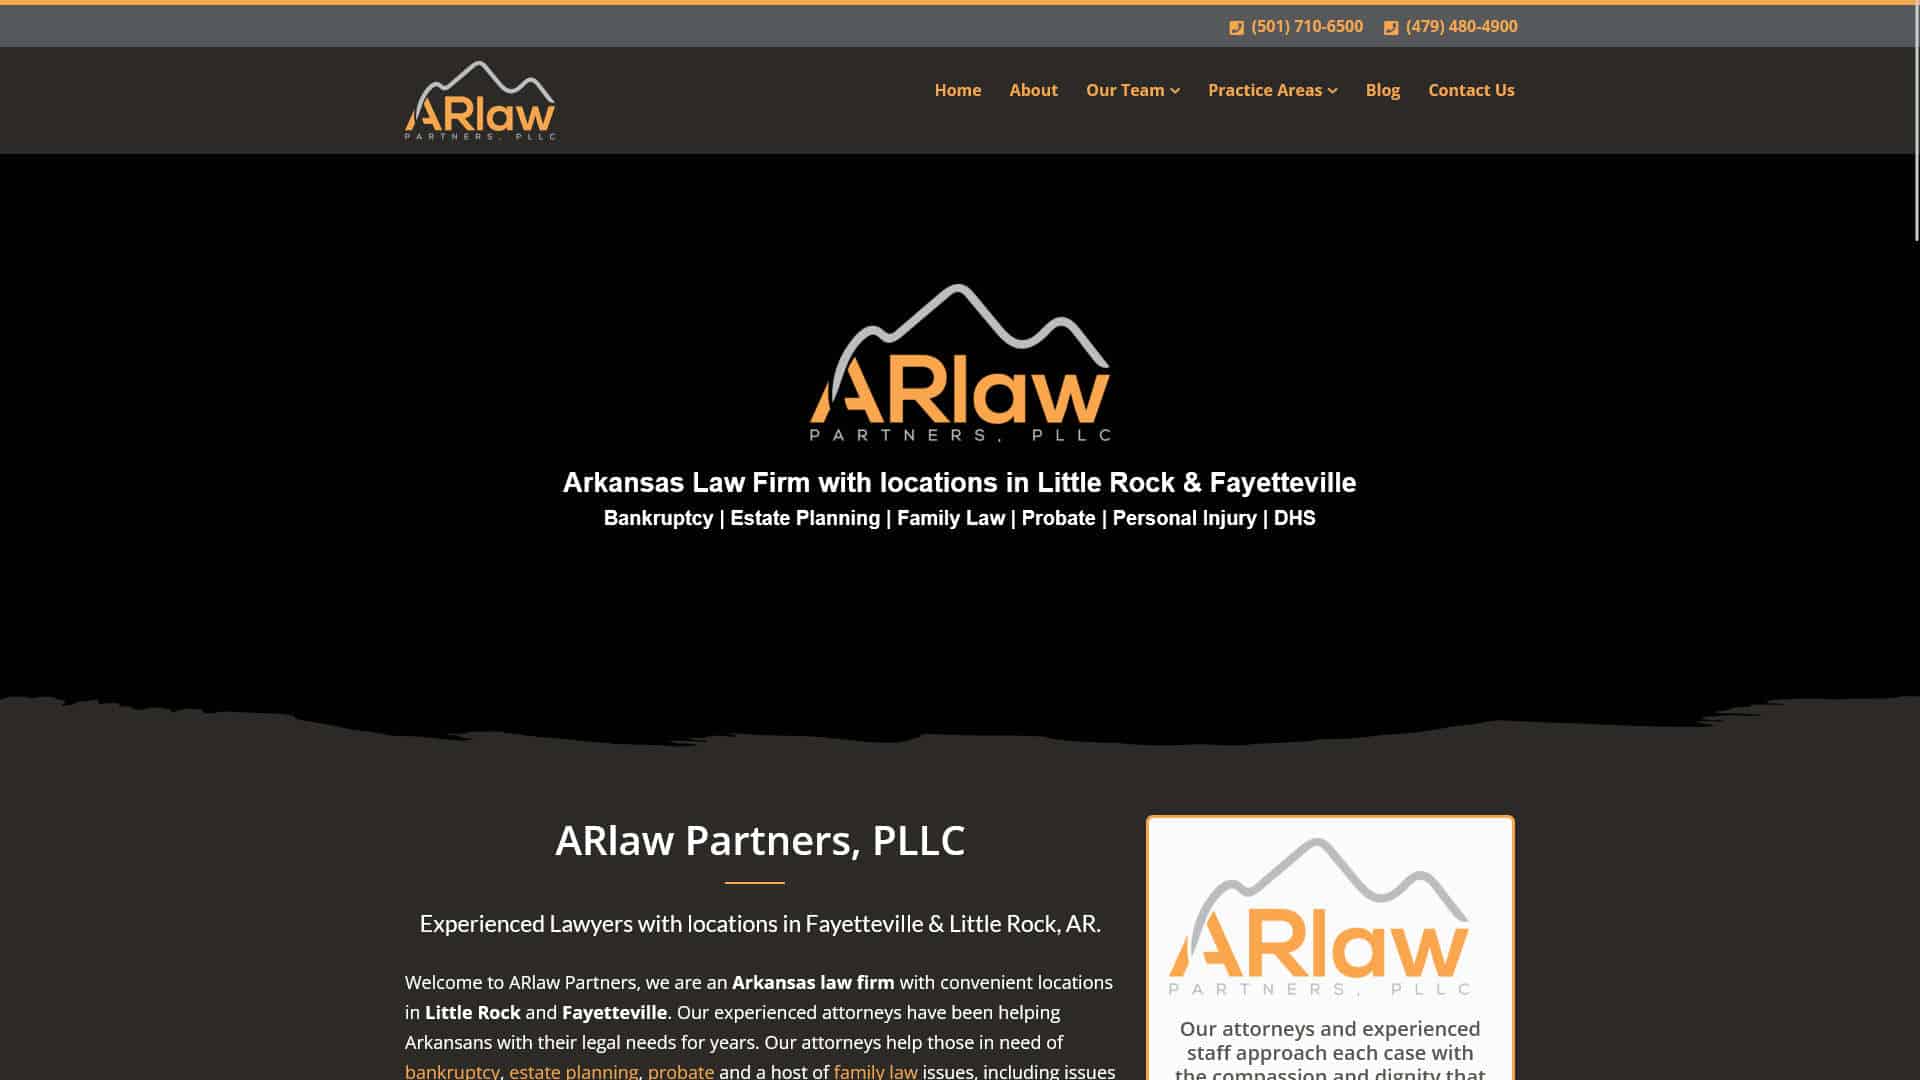 AR Law Partners